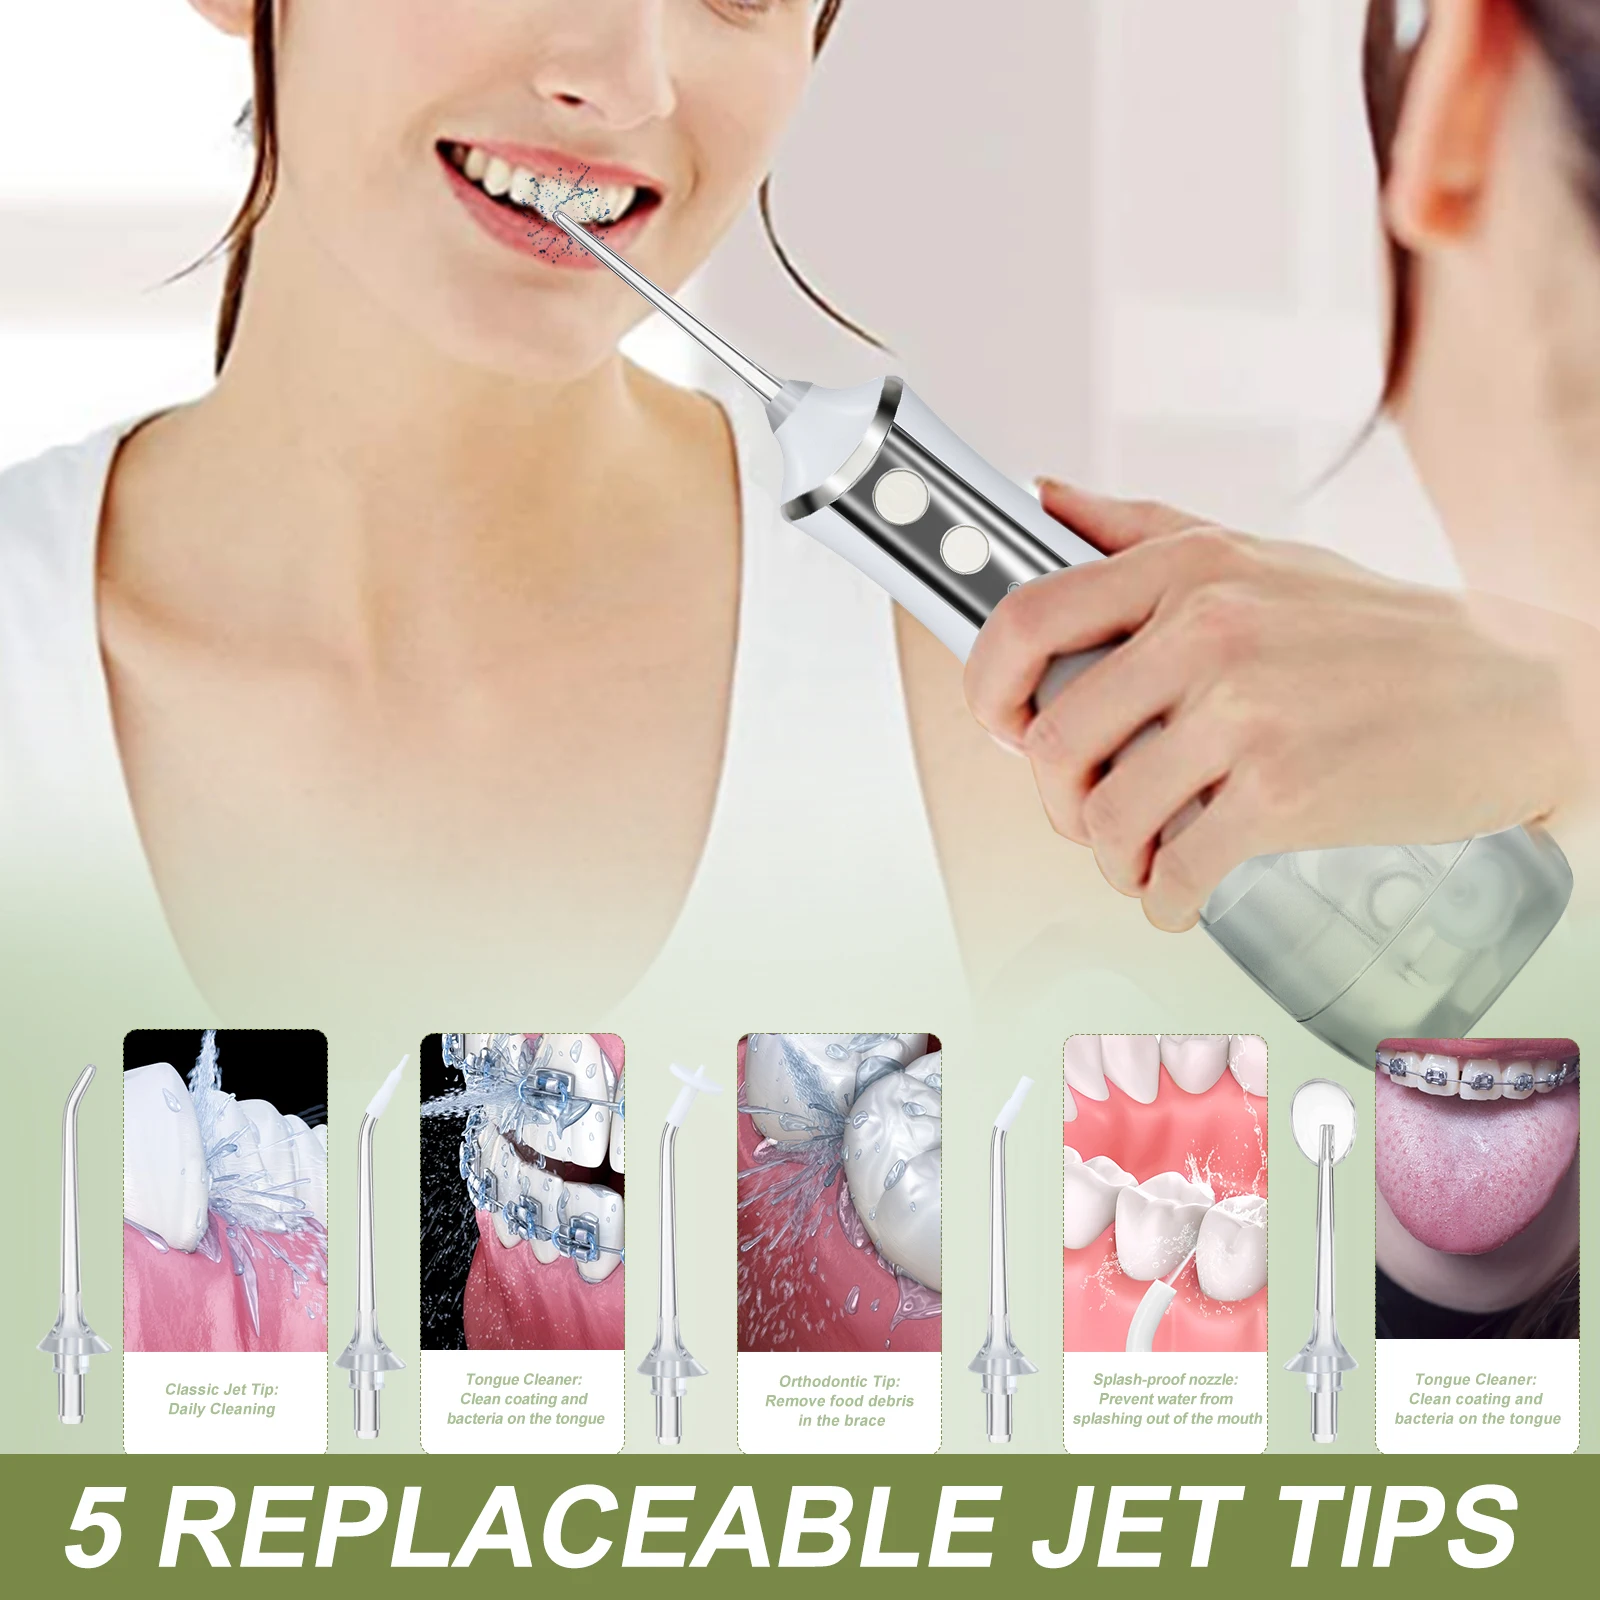 Electric Oral Irrigator 3 Mode Dental Water Flosser whitener Rechargeable teeth whitening IP6 Waterproof Water Jet Teeth Cleaner